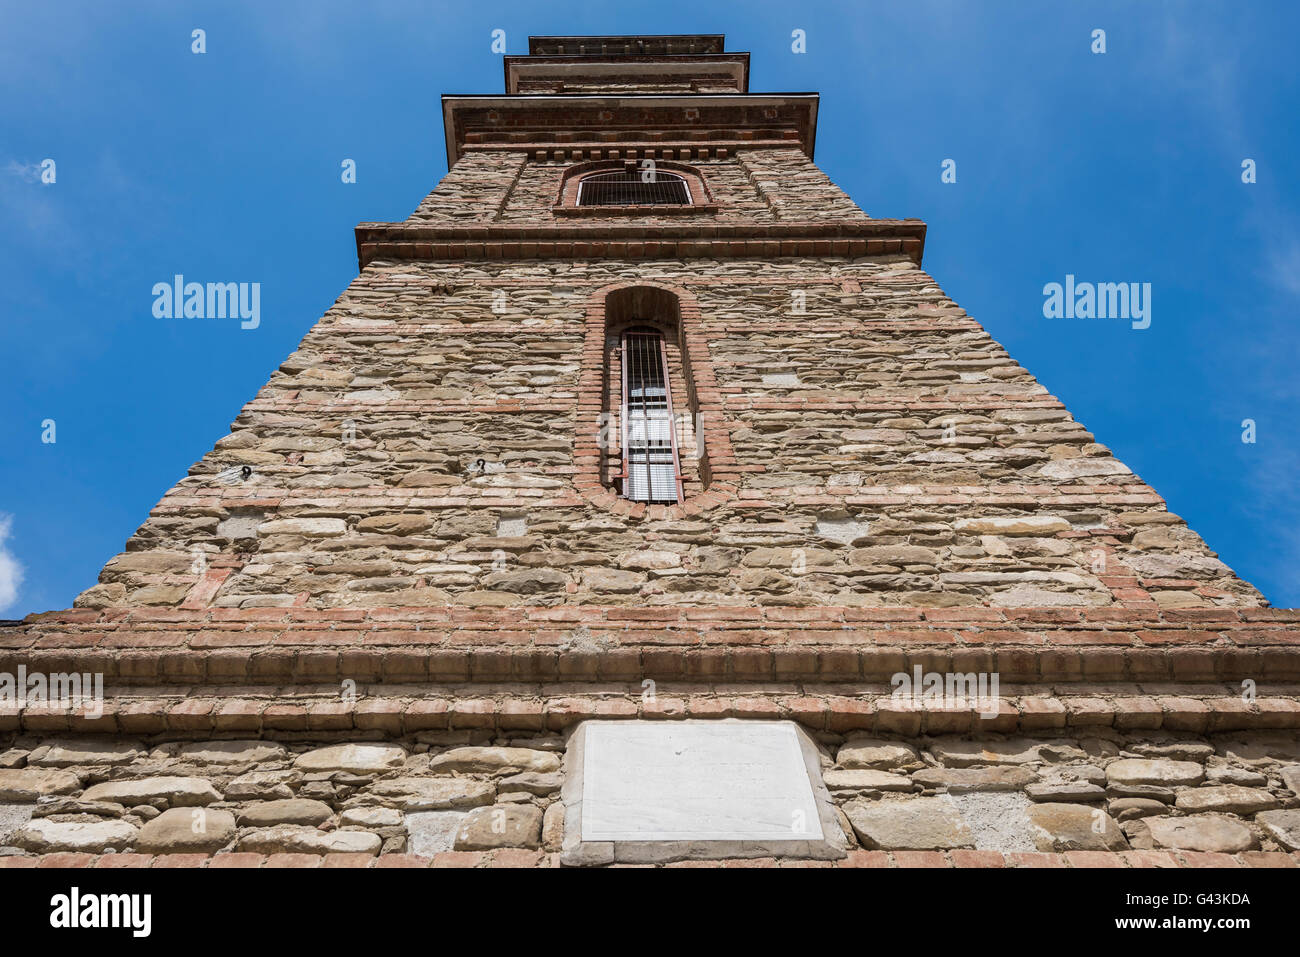 Torre de la Iglesia de Monastero Bormida con el cielo azul en la provincia de Asti, Piamonte, Italia. Foto de stock